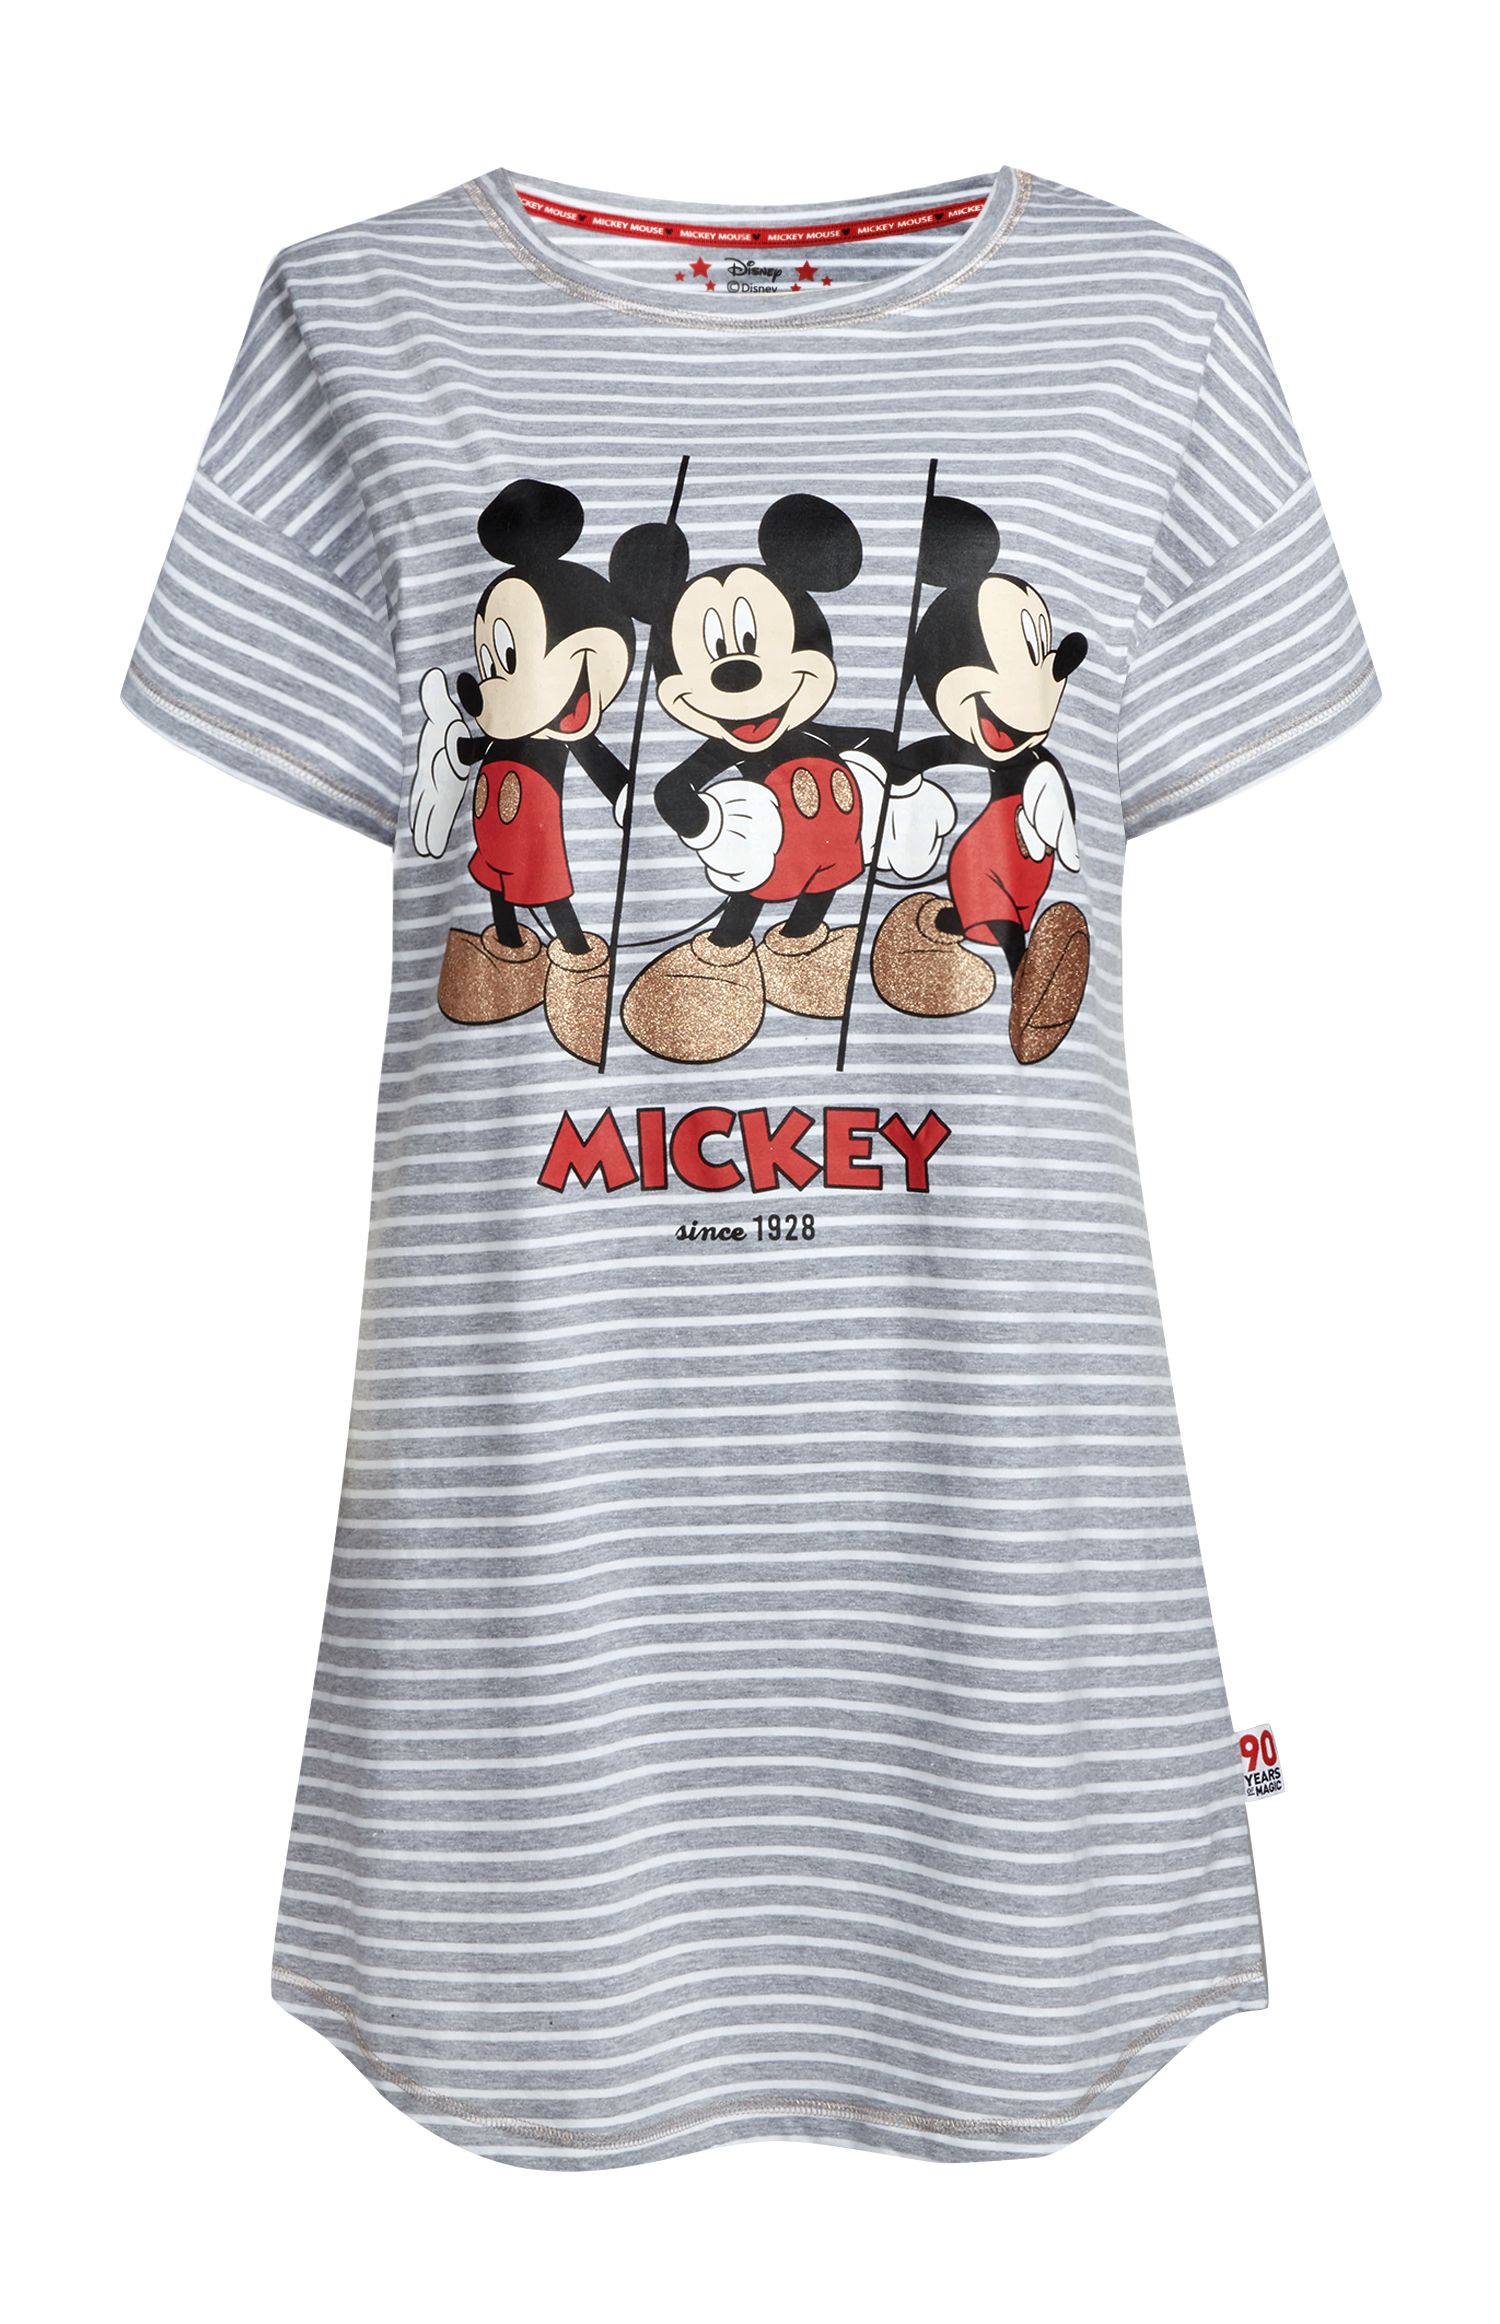 Primark lanza la colección de pijamas de Mickey